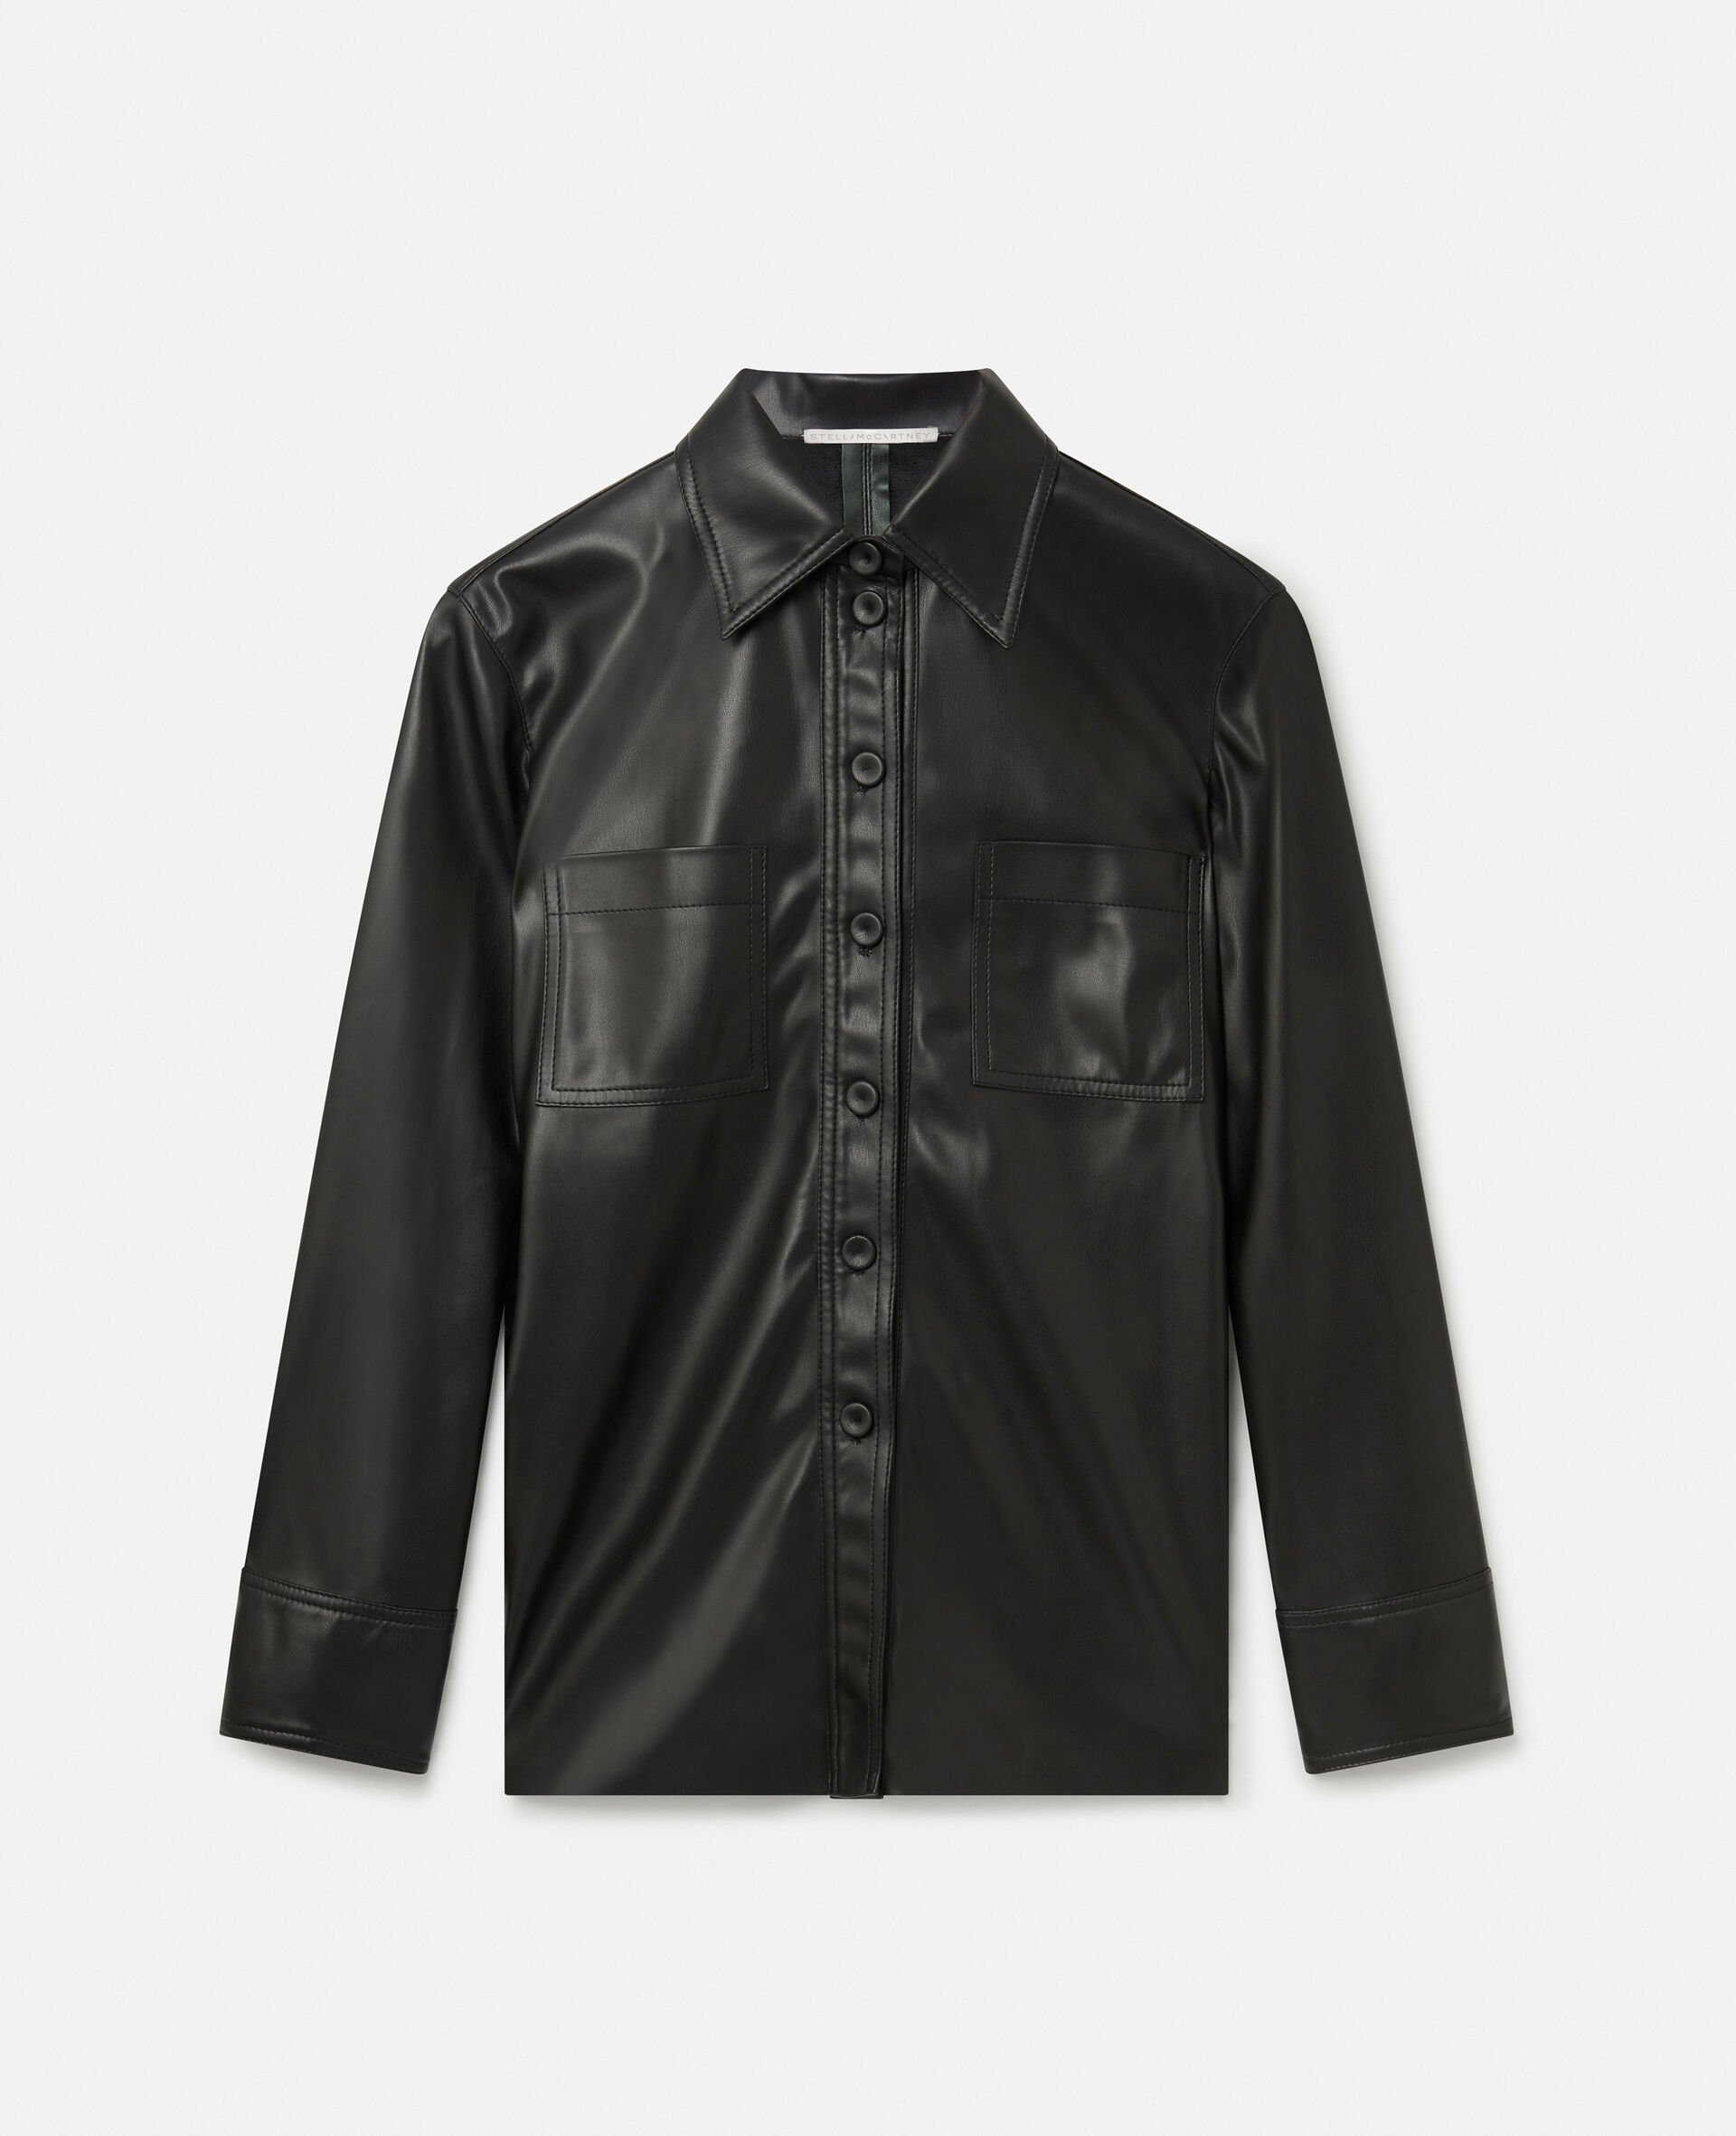 Alter Mat Shirt-Black-large image number 0